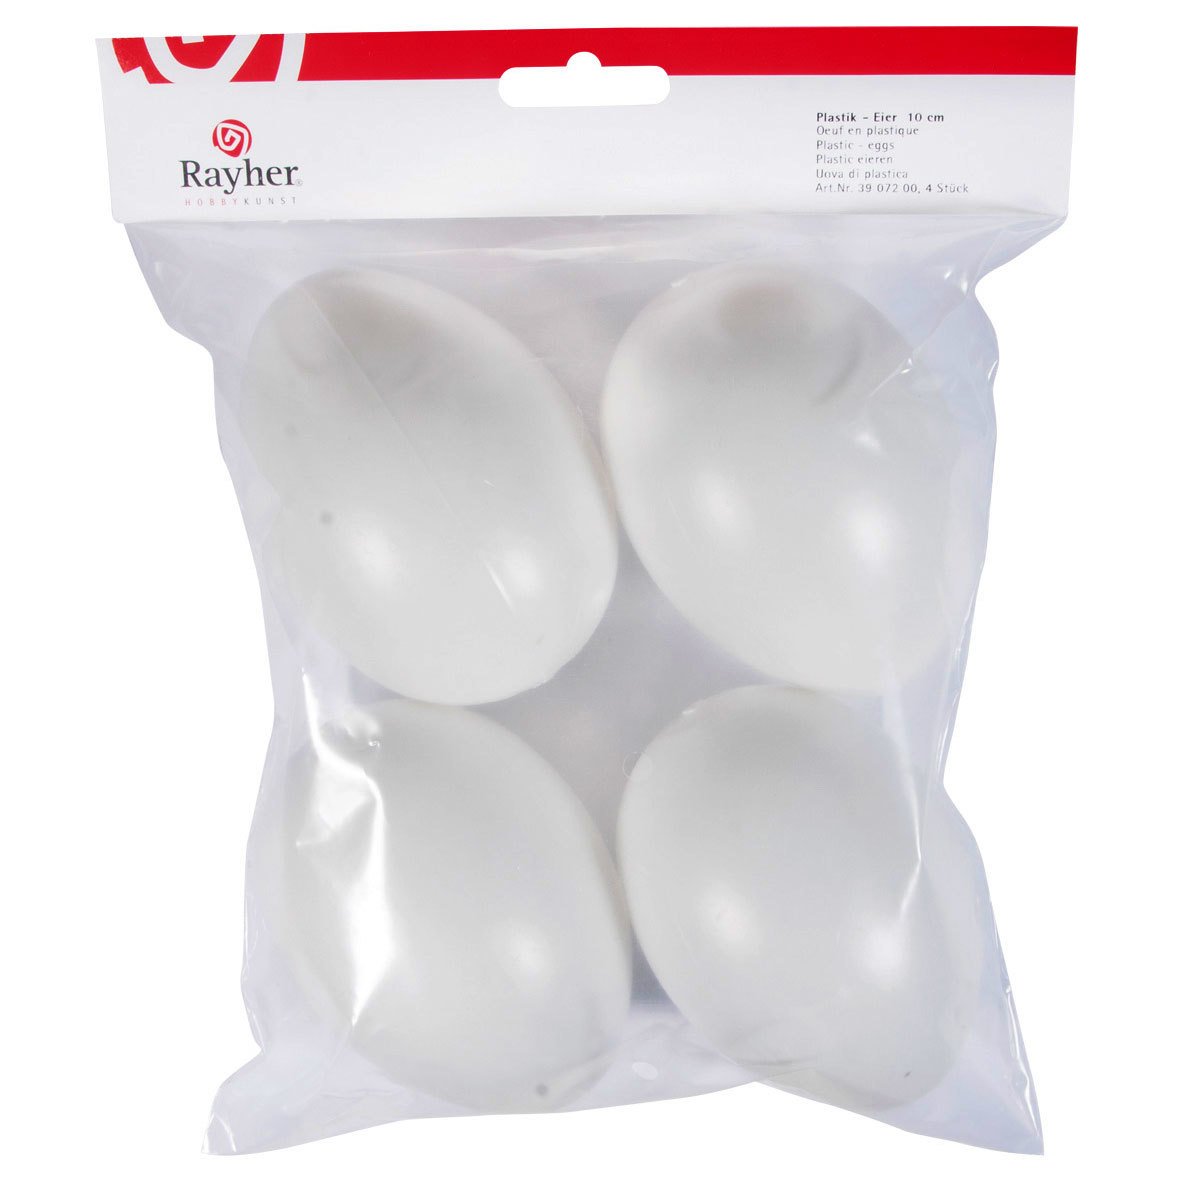 Plastikeier weiß ca. 10cm, 4 Eier im Beutel